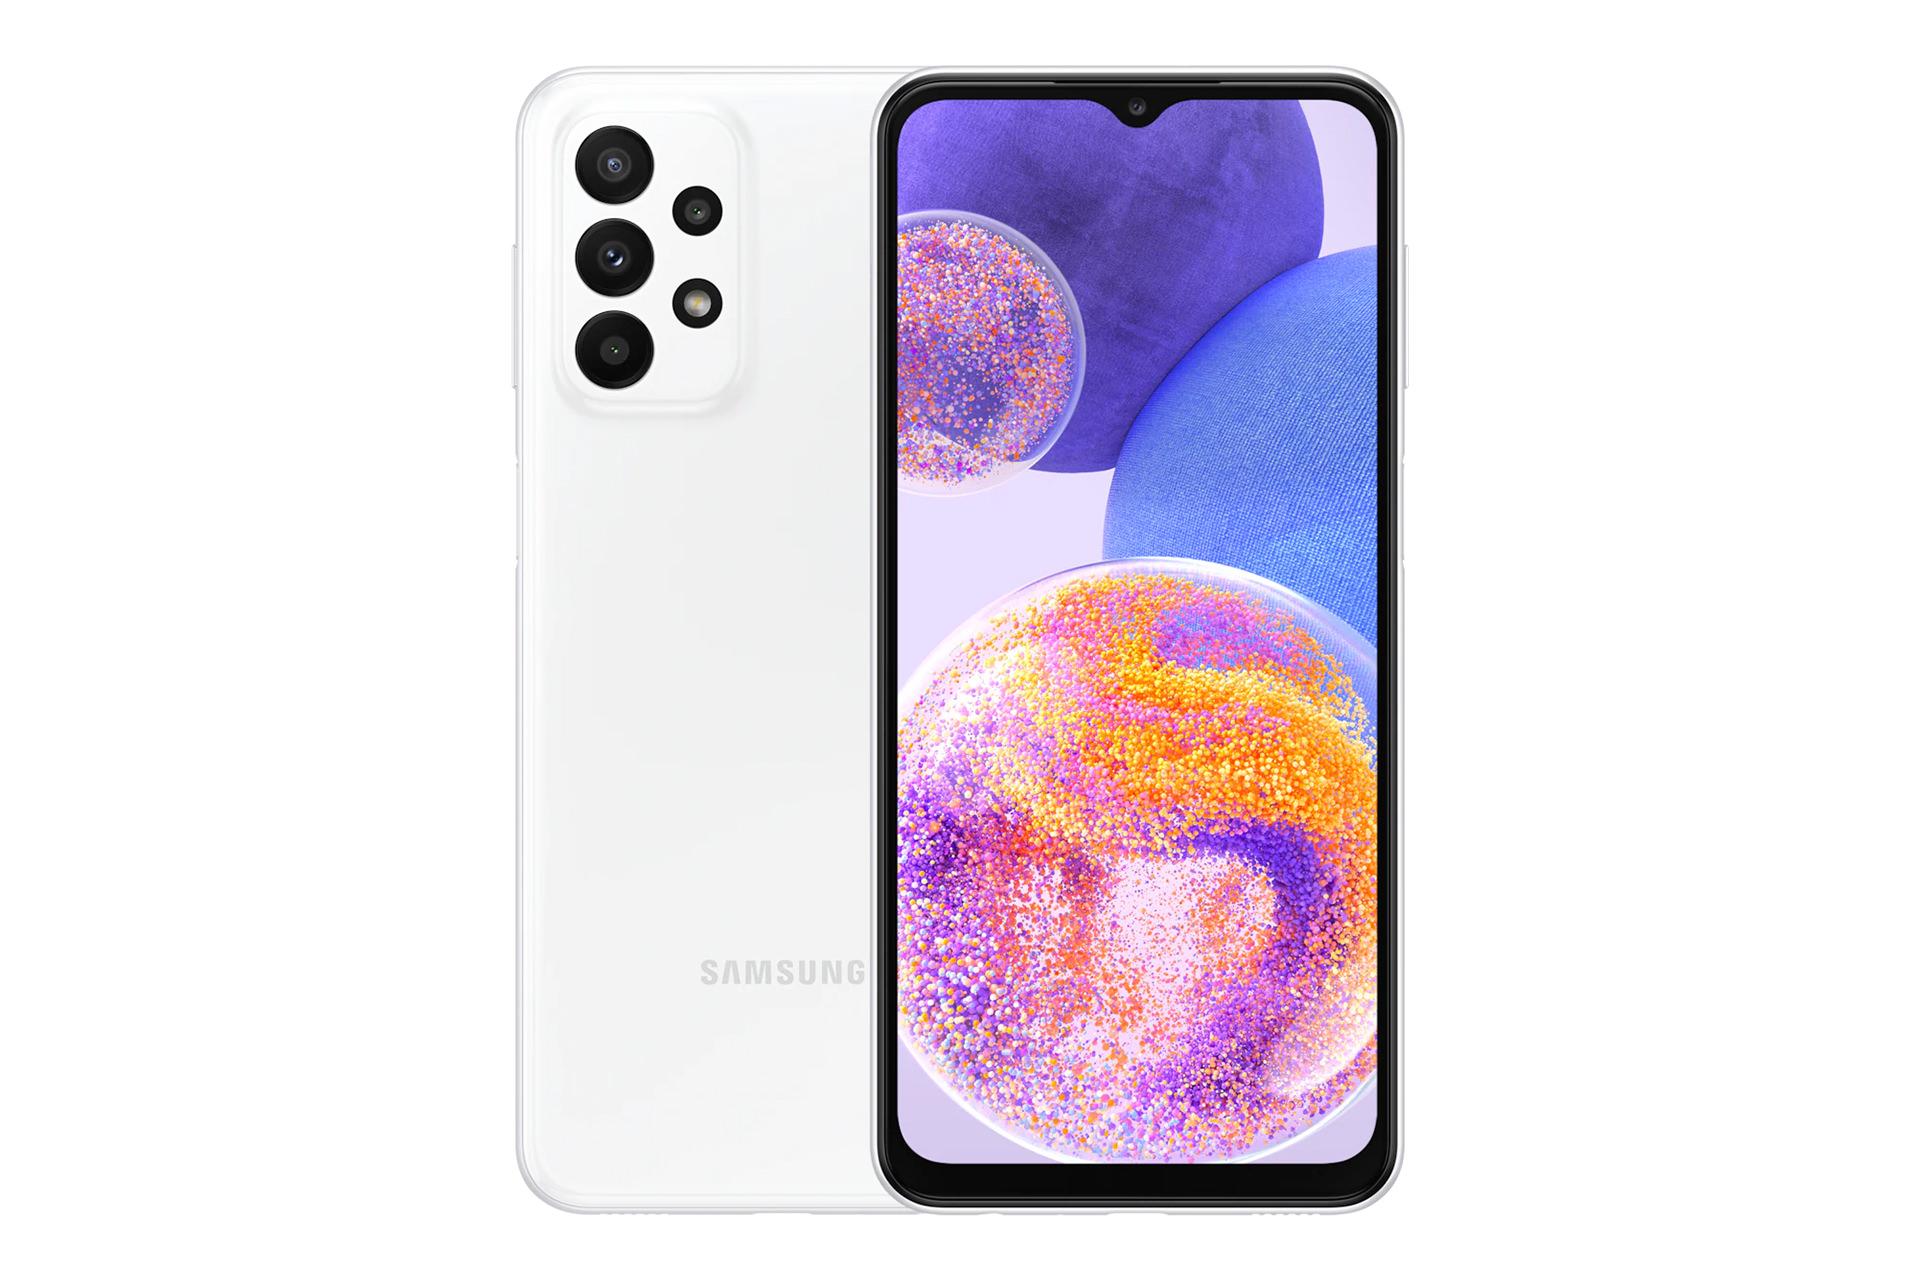 نمای کلی گوشی موبایل گلکسی A23 سامسونگ / Samsung Galaxy A23 با نمایشگر روشن و نمایش لوگو و دوربین های پنل پشت رنگ سفید